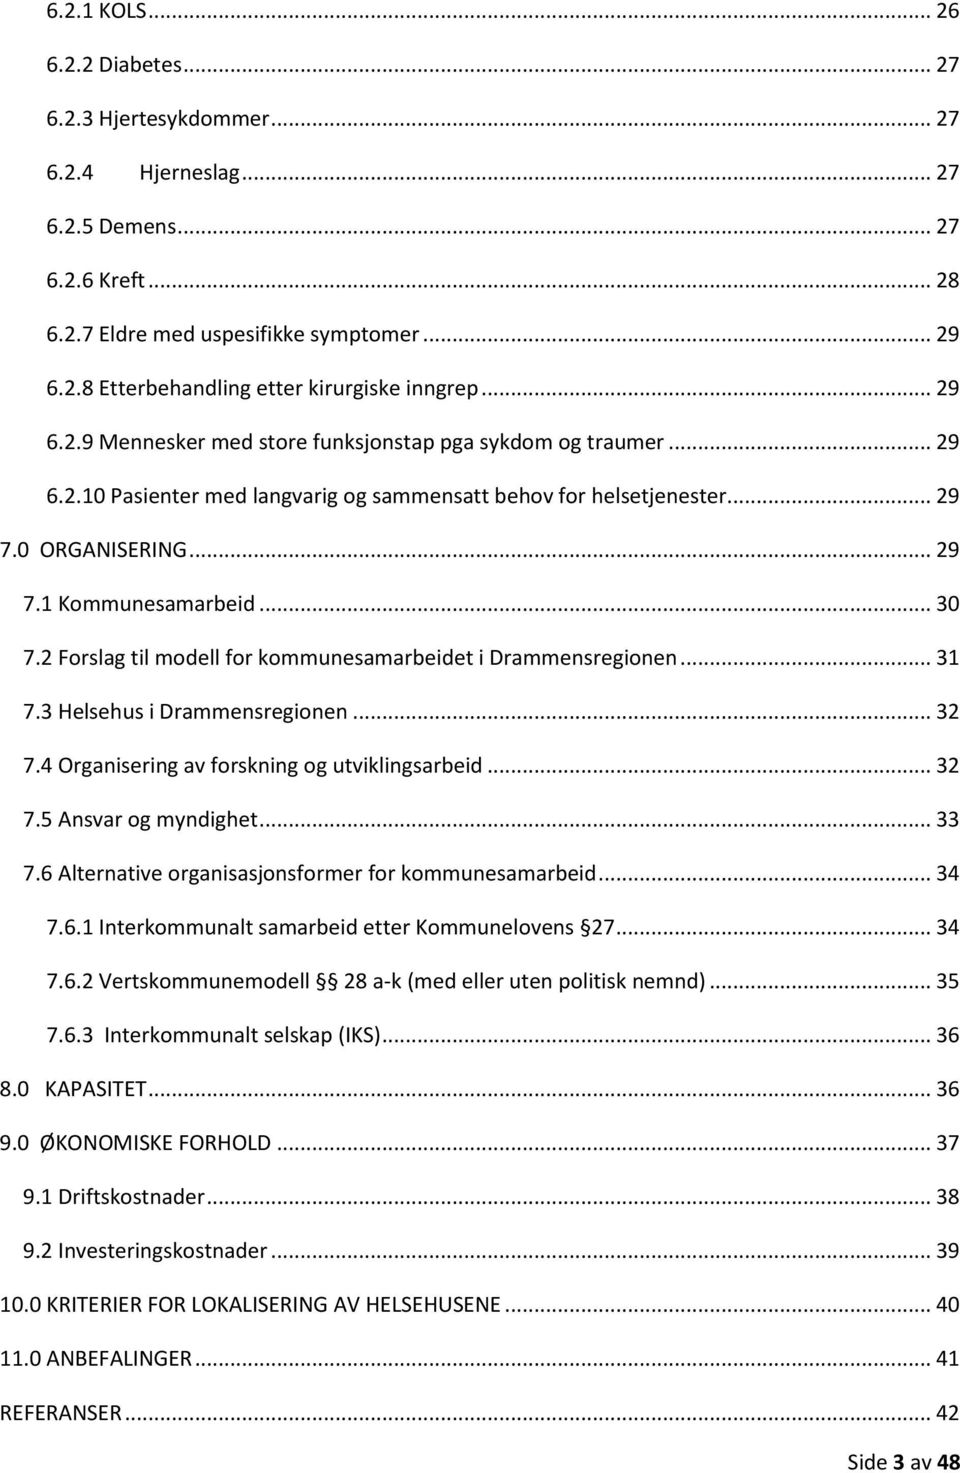 2 Forslag til modell for kommunesamarbeidet i Drammensregionen... 31 7.3 Helsehus i Drammensregionen... 32 7.4 Organisering av forskning og utviklingsarbeid... 32 7.5 Ansvar og myndighet... 33 7.